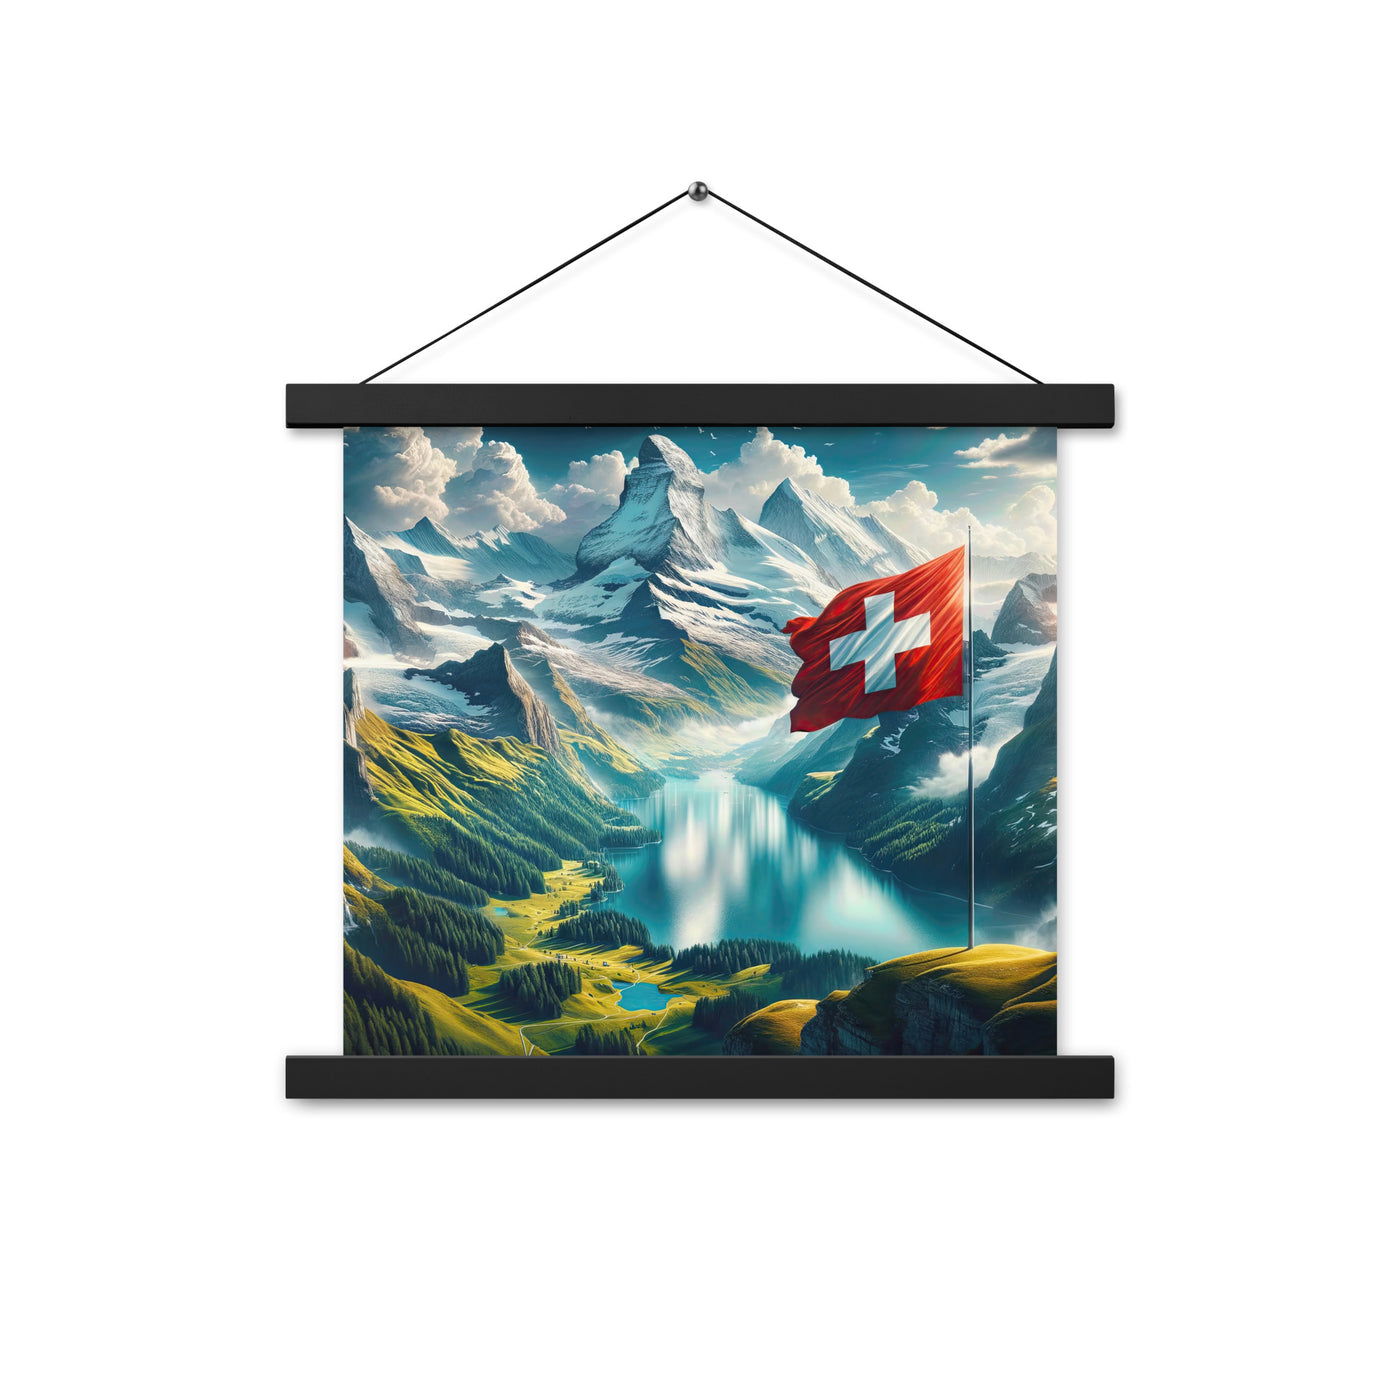 Ultraepische, fotorealistische Darstellung der Schweizer Alpenlandschaft mit Schweizer Flagge - Enhanced Matte Paper Poster With Hanger berge xxx yyy zzz 35.6 x 35.6 cm